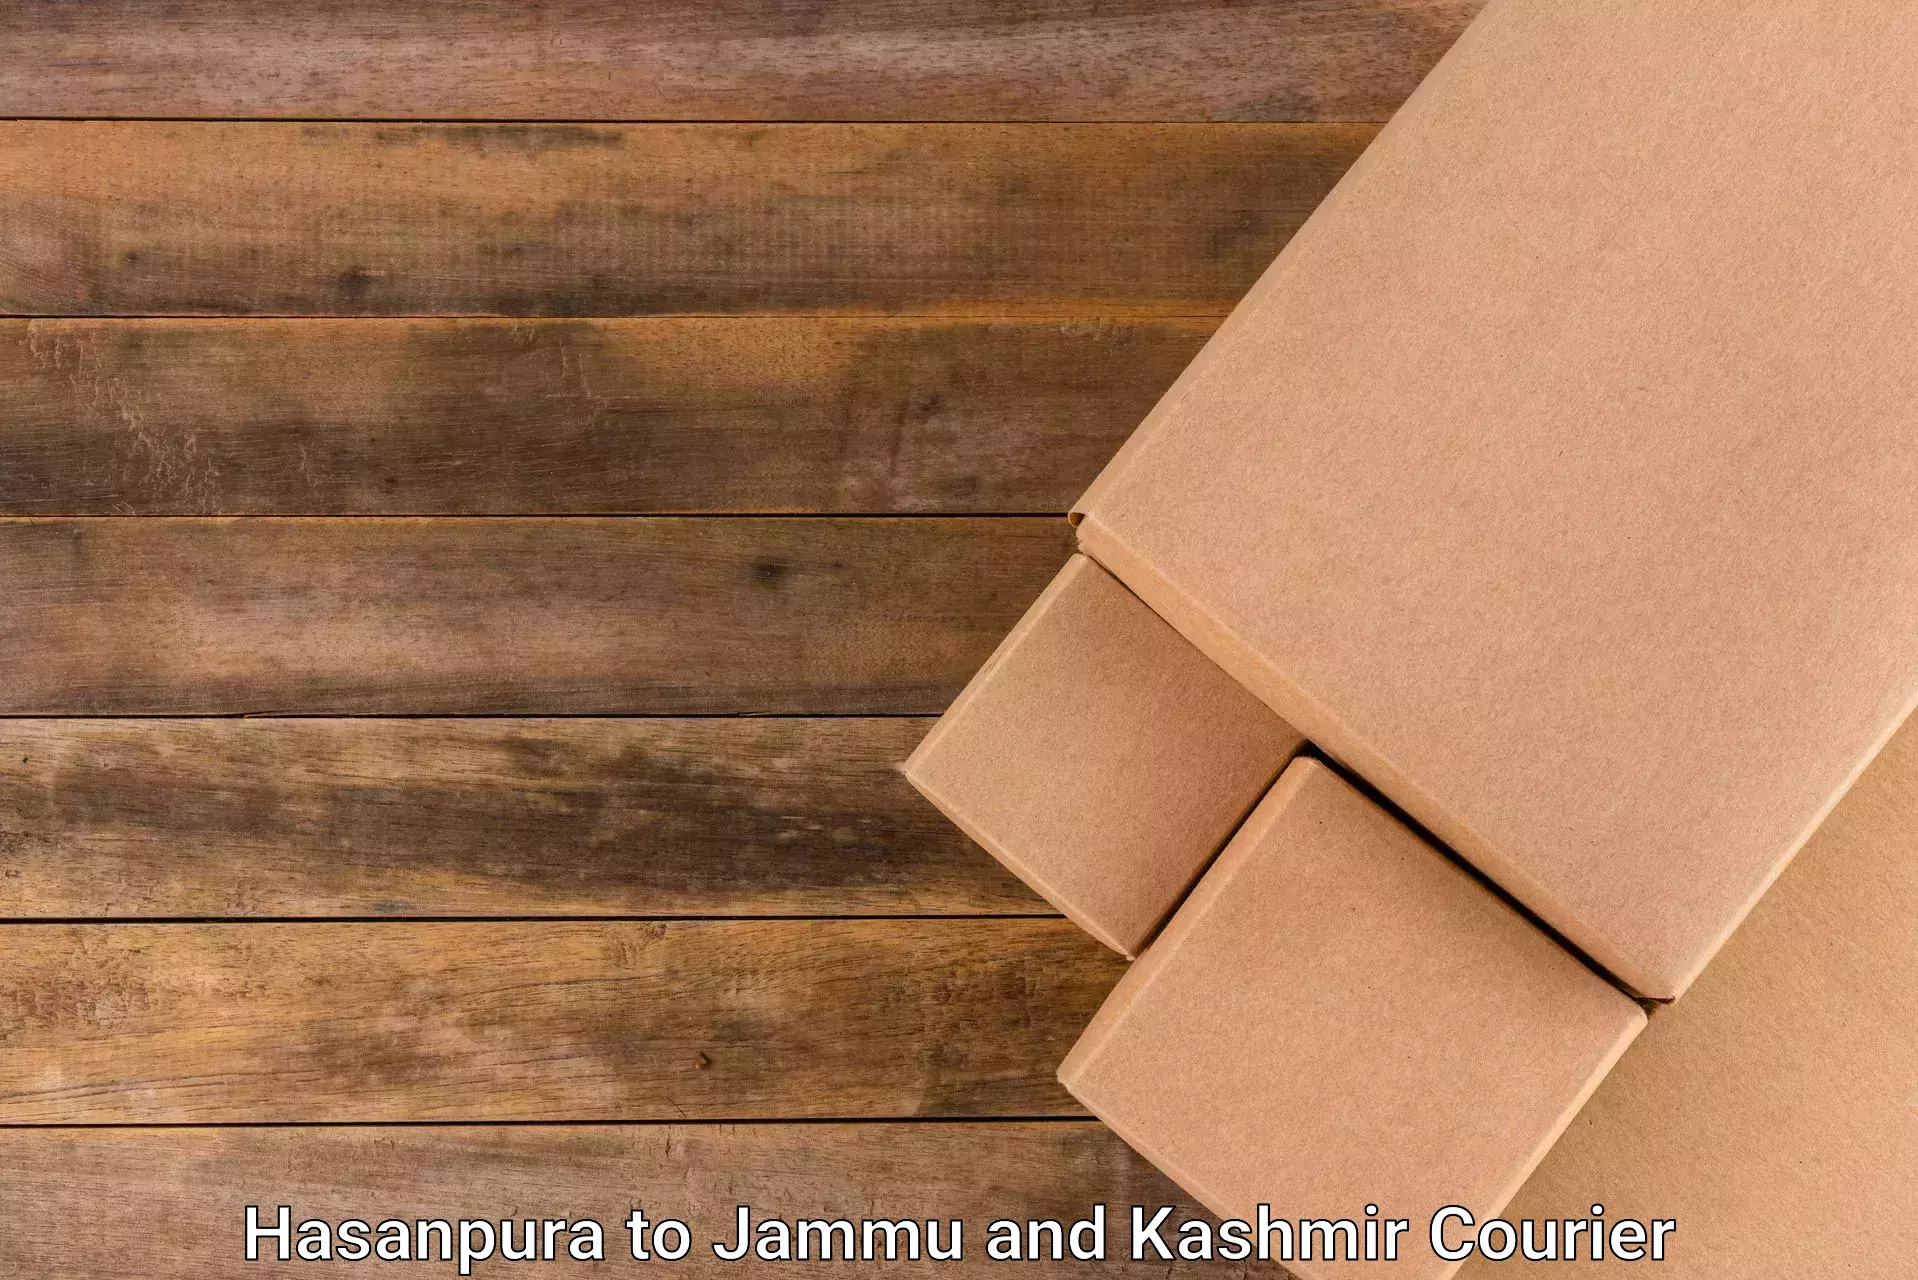 Courier service partnerships Hasanpura to Srinagar Kashmir